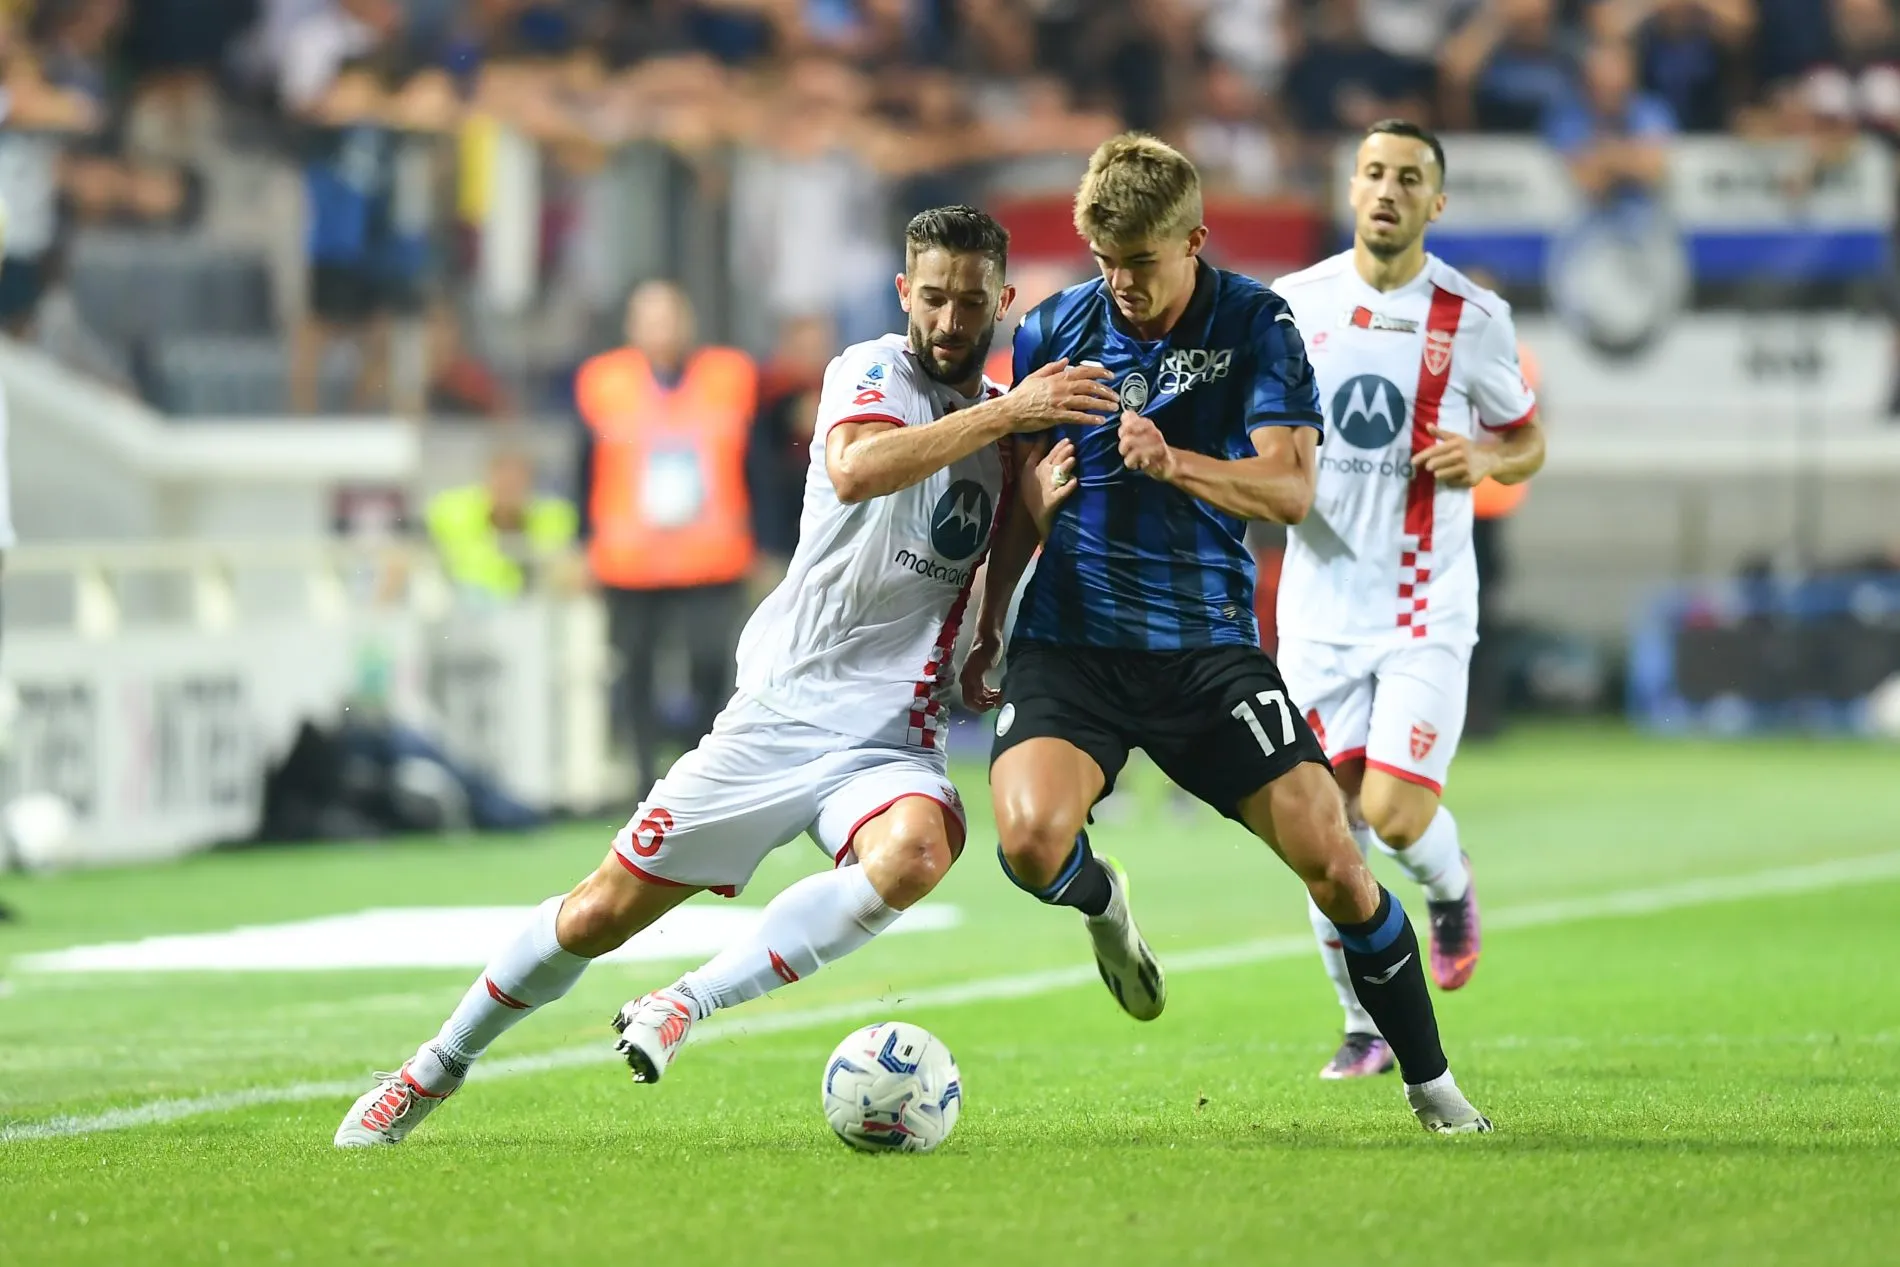 De Ketelaere e il messaggio a Pioli: 'Al Milan c'era un problema, a Bergamo gioco diversamente'